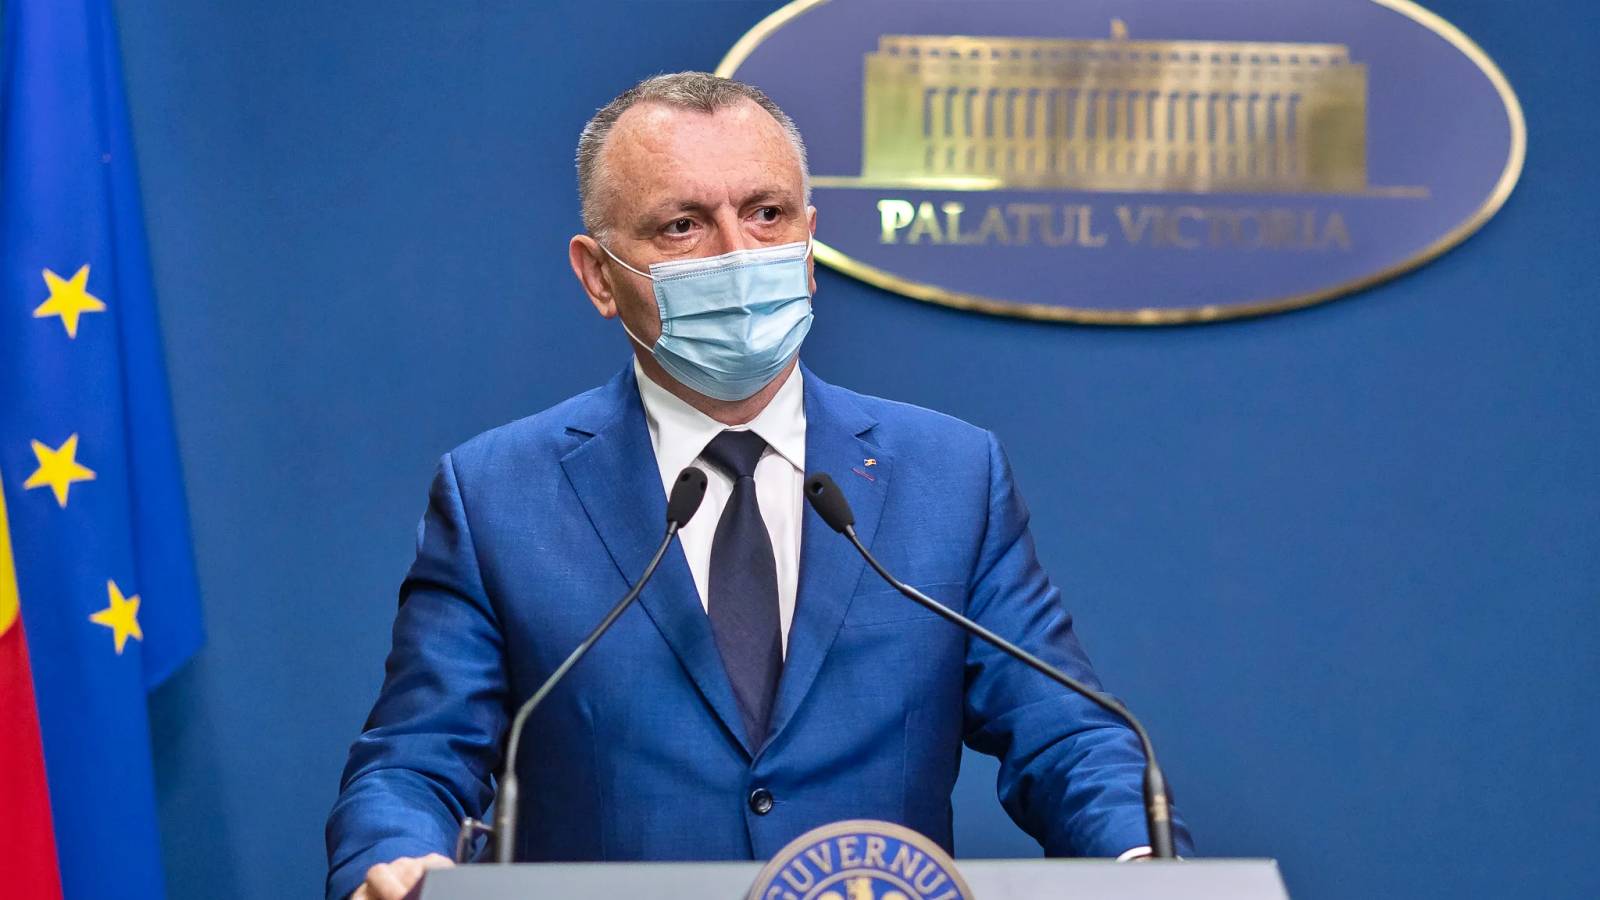 Opetusministeri ilmoitti viimeksi kouluista koko Romanian